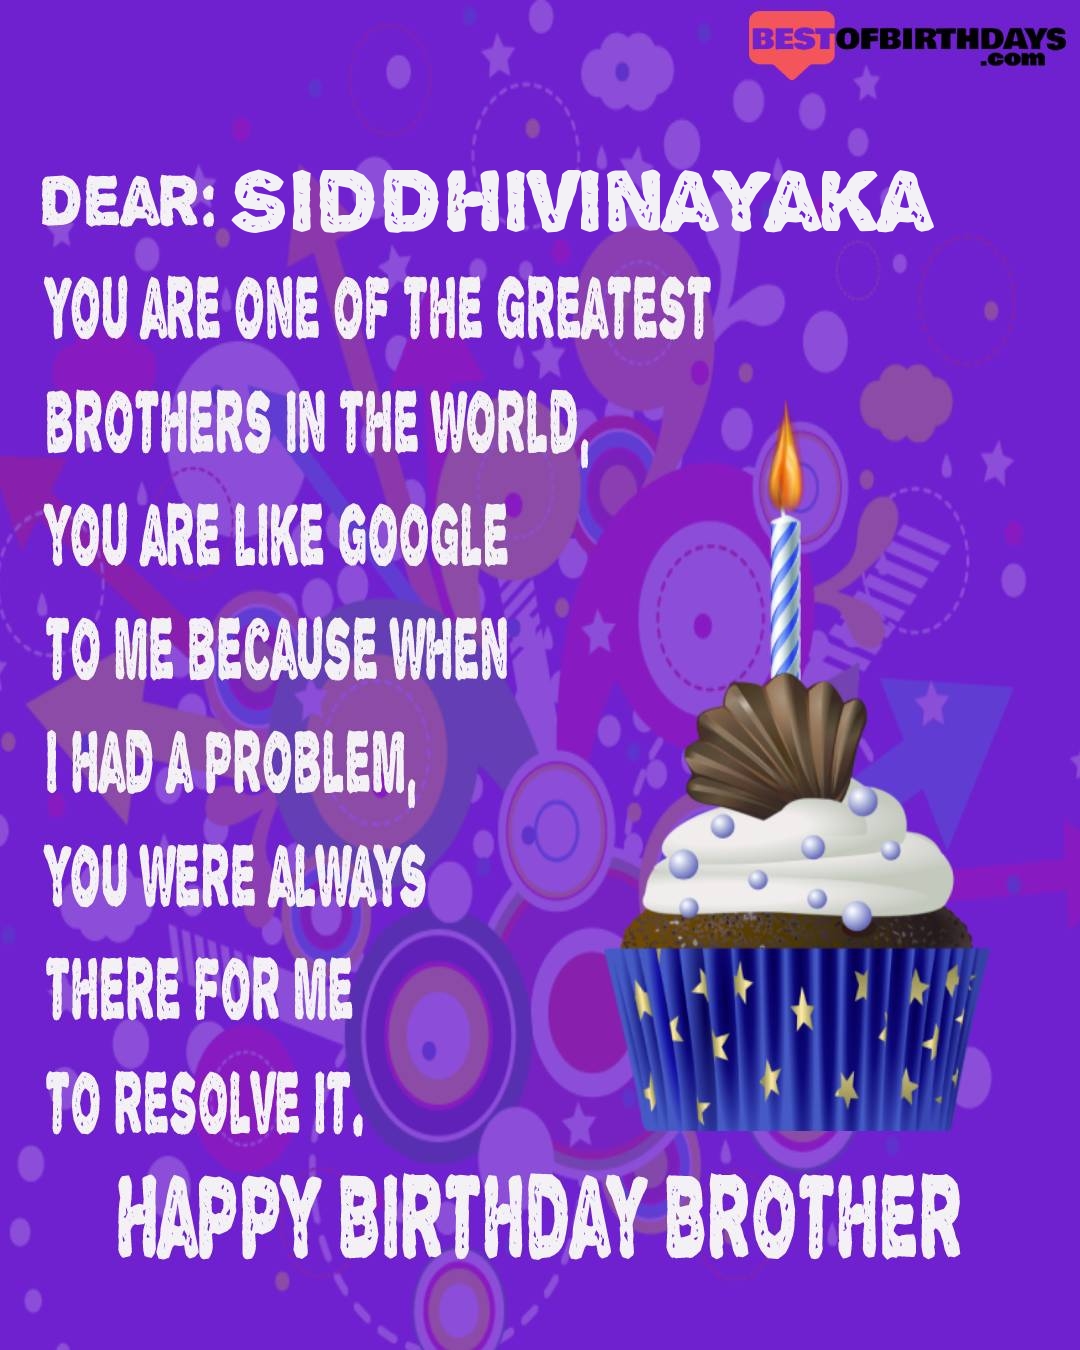 Happy birthday siddhivinayaka bhai brother bro